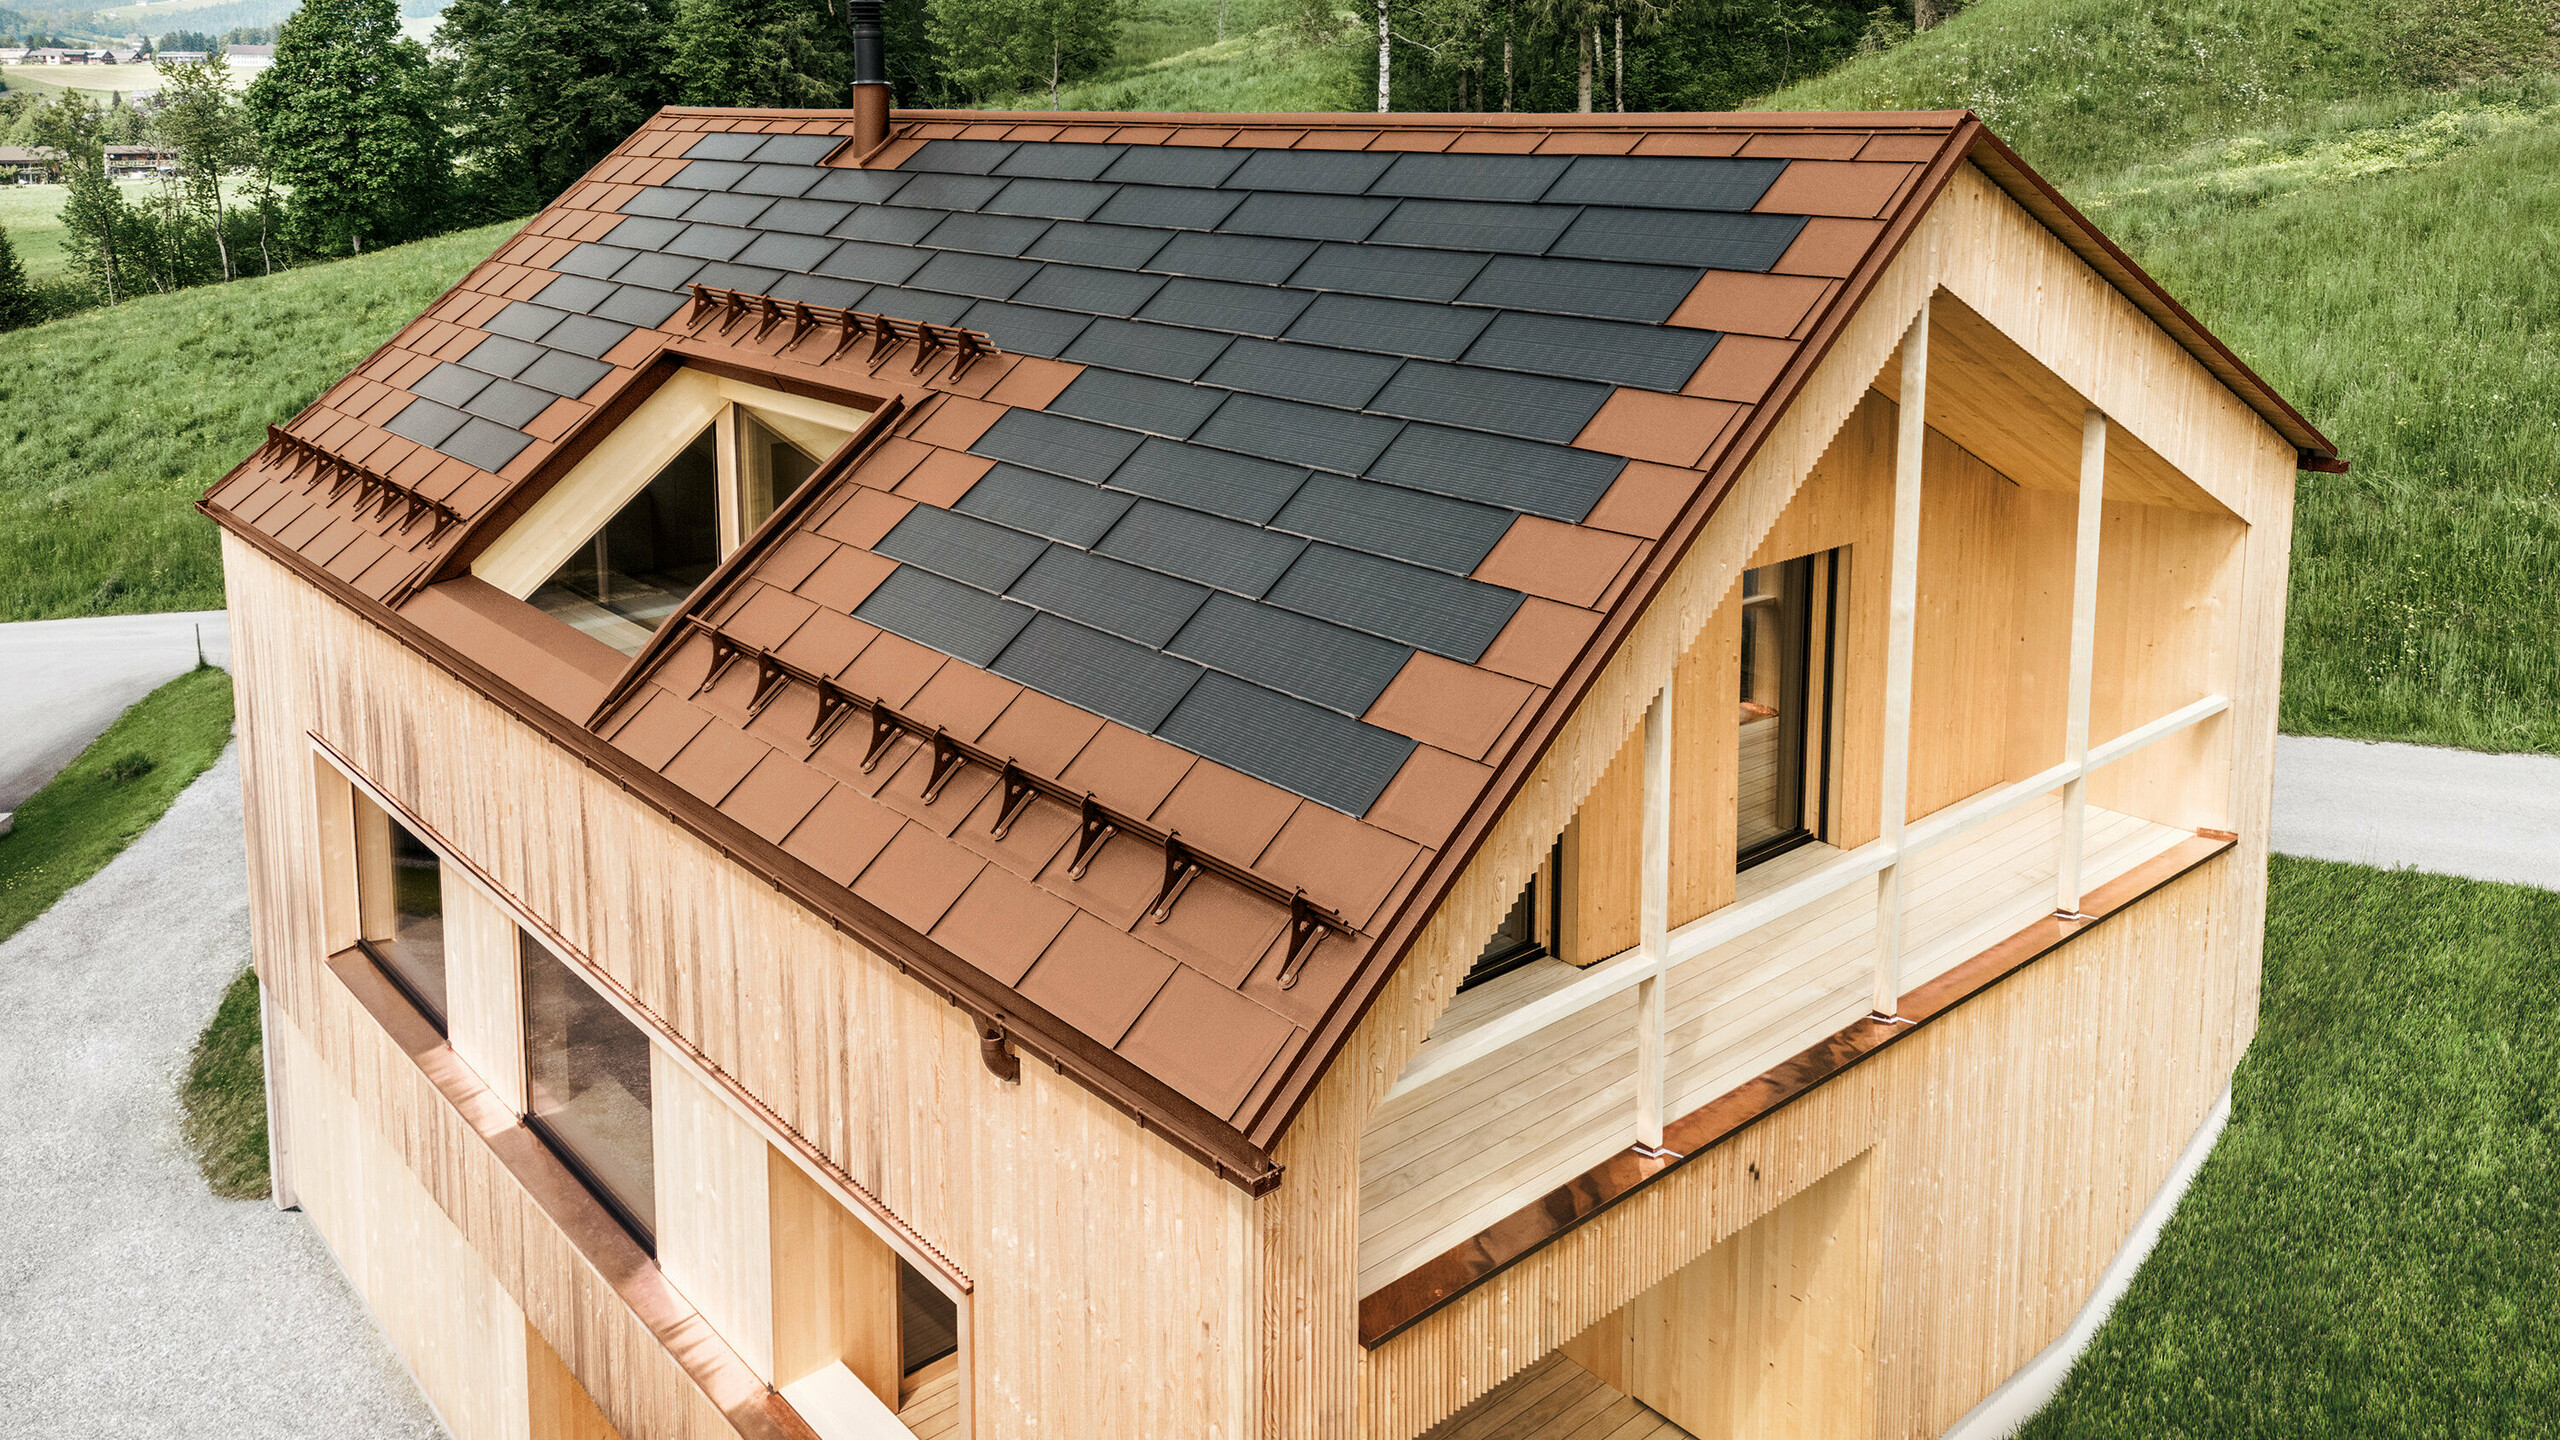 Einfamilienhaus im österreichischen Ort Egg mit der PREFA Solardachplatte und der Dachplatte R.16 in Ziegelrot, kombiniert mit einer Holzfassade